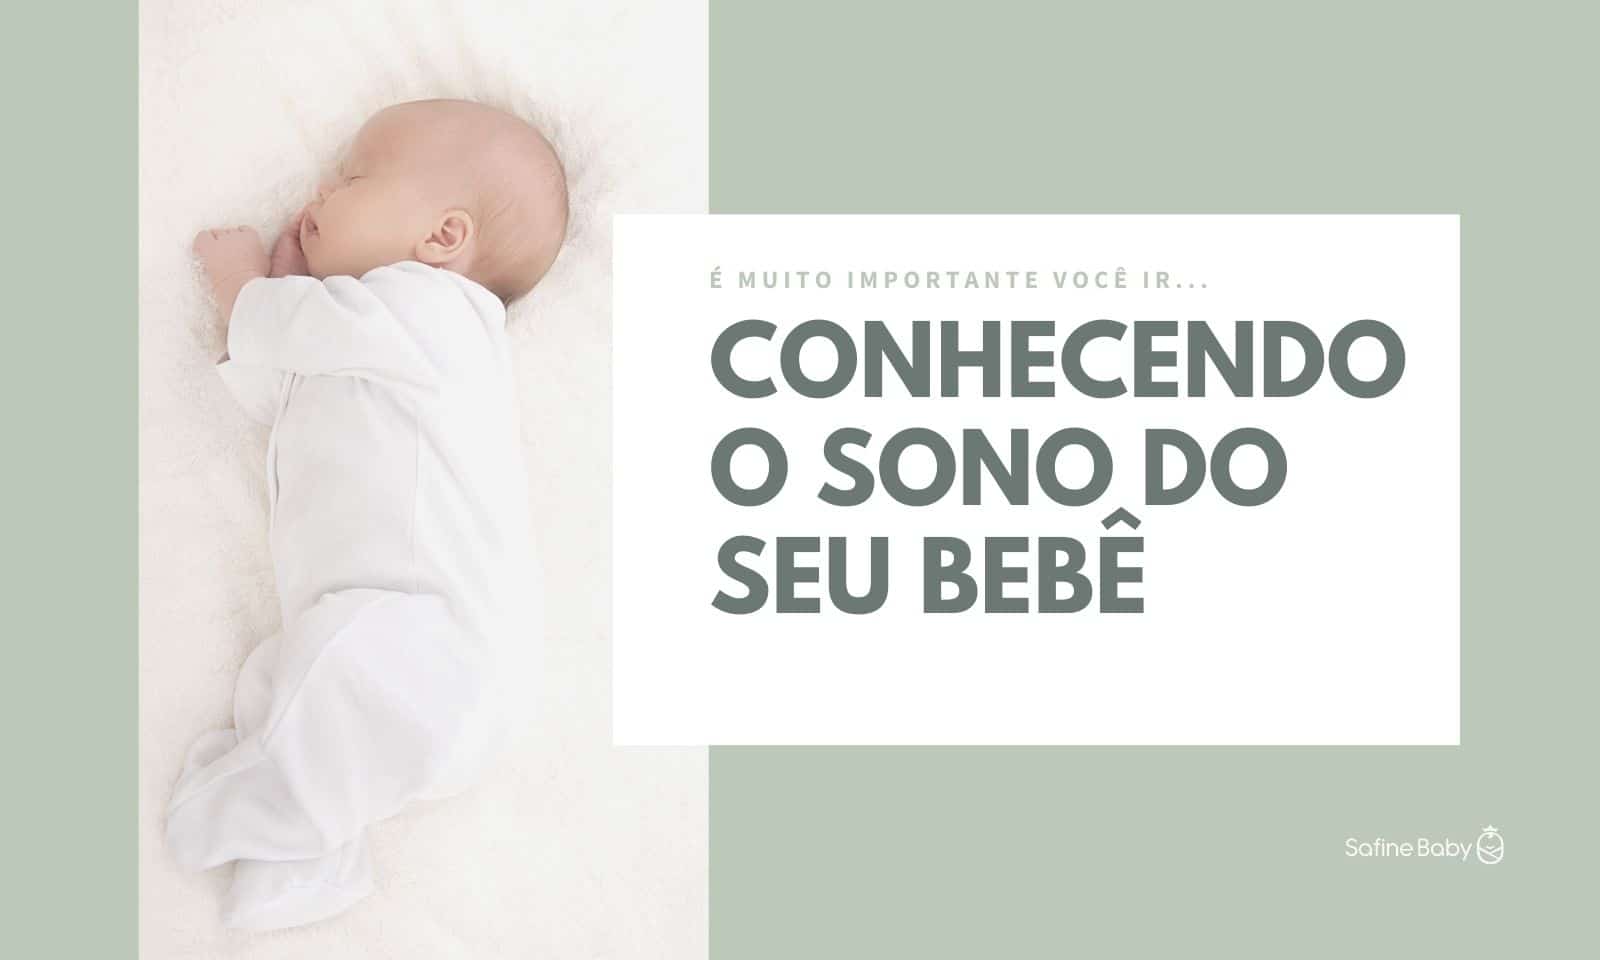 safinebaby.com.br conhecendo o sono do seu bebe conhecendo o sono do bebe blog 1